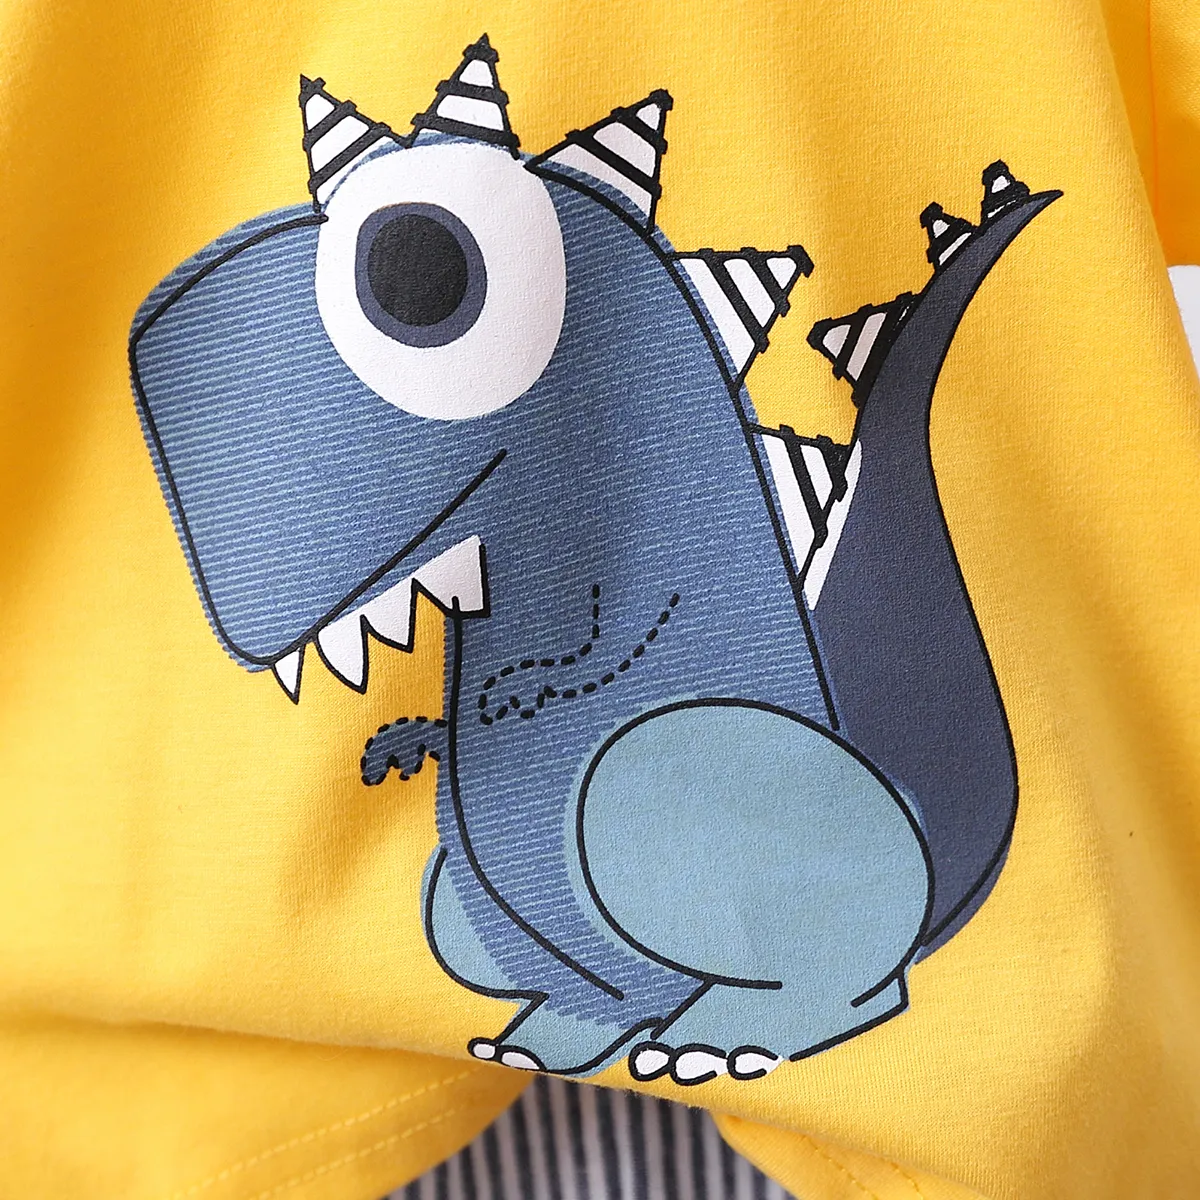 2pcs Toddler Boy Playful Dinosaur Print Tee & Stripe Shorts Set Yellow big image 1